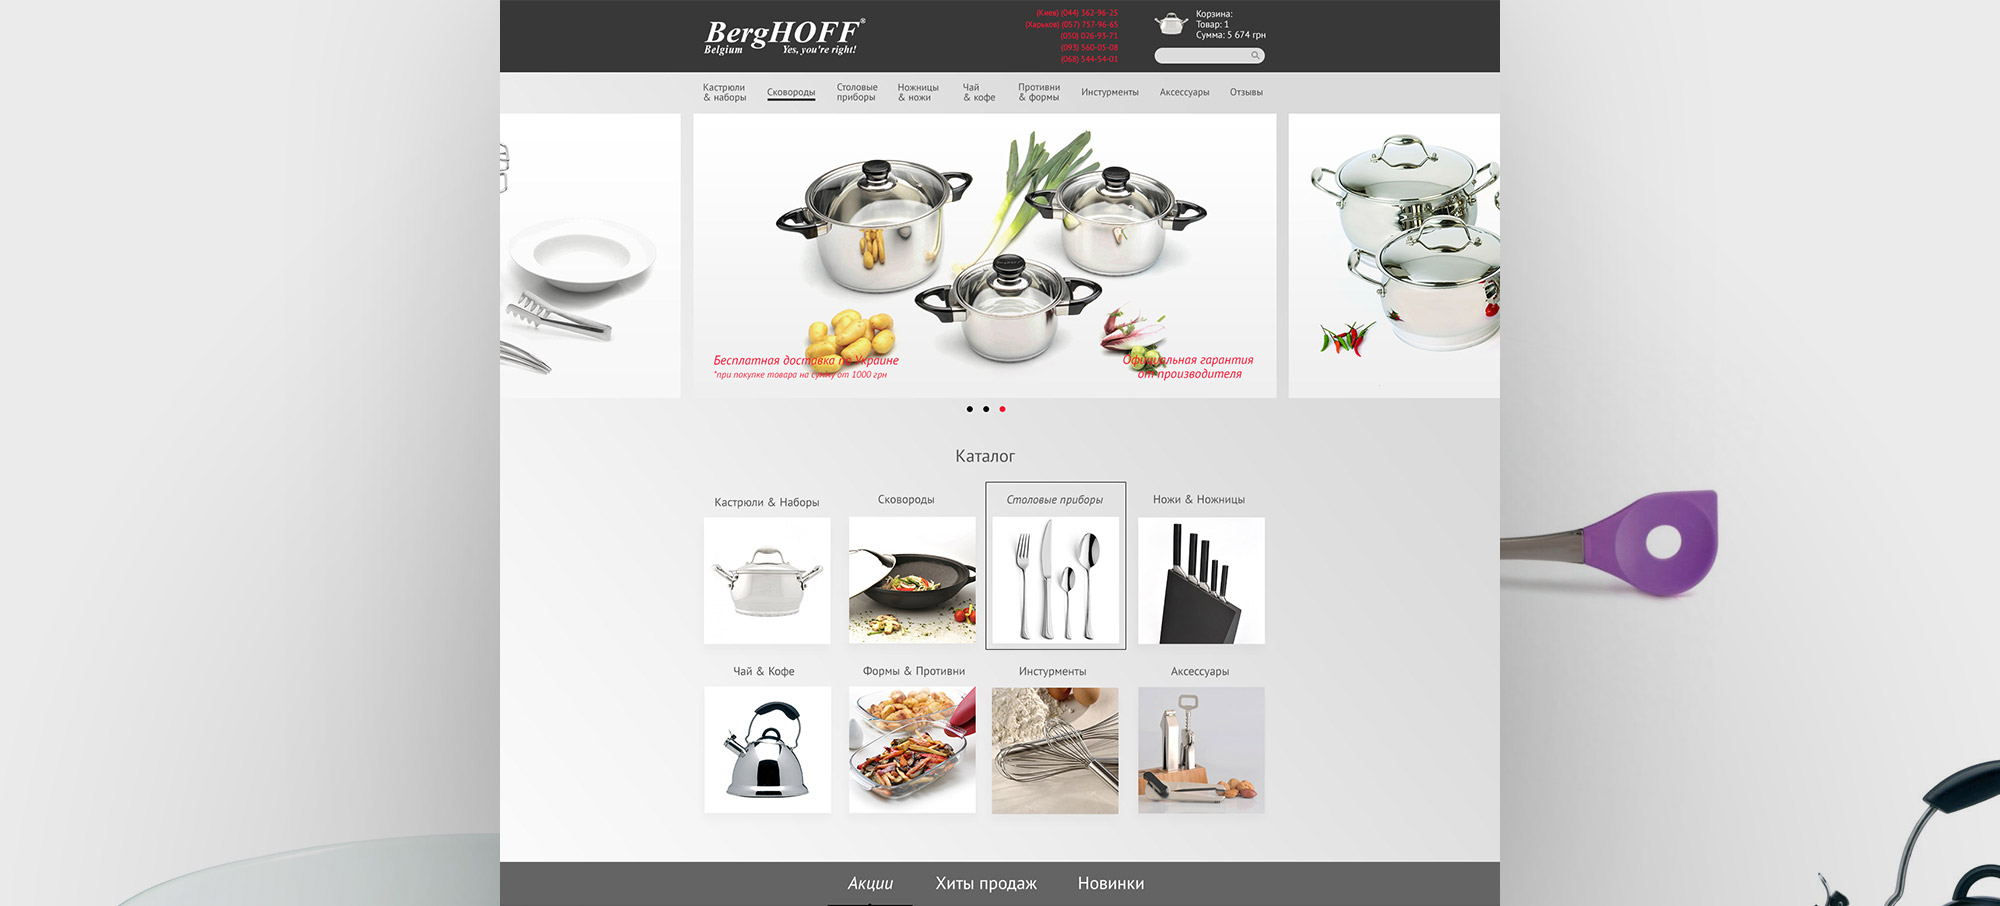 Создание интернет-магазина посуды BergHOFF